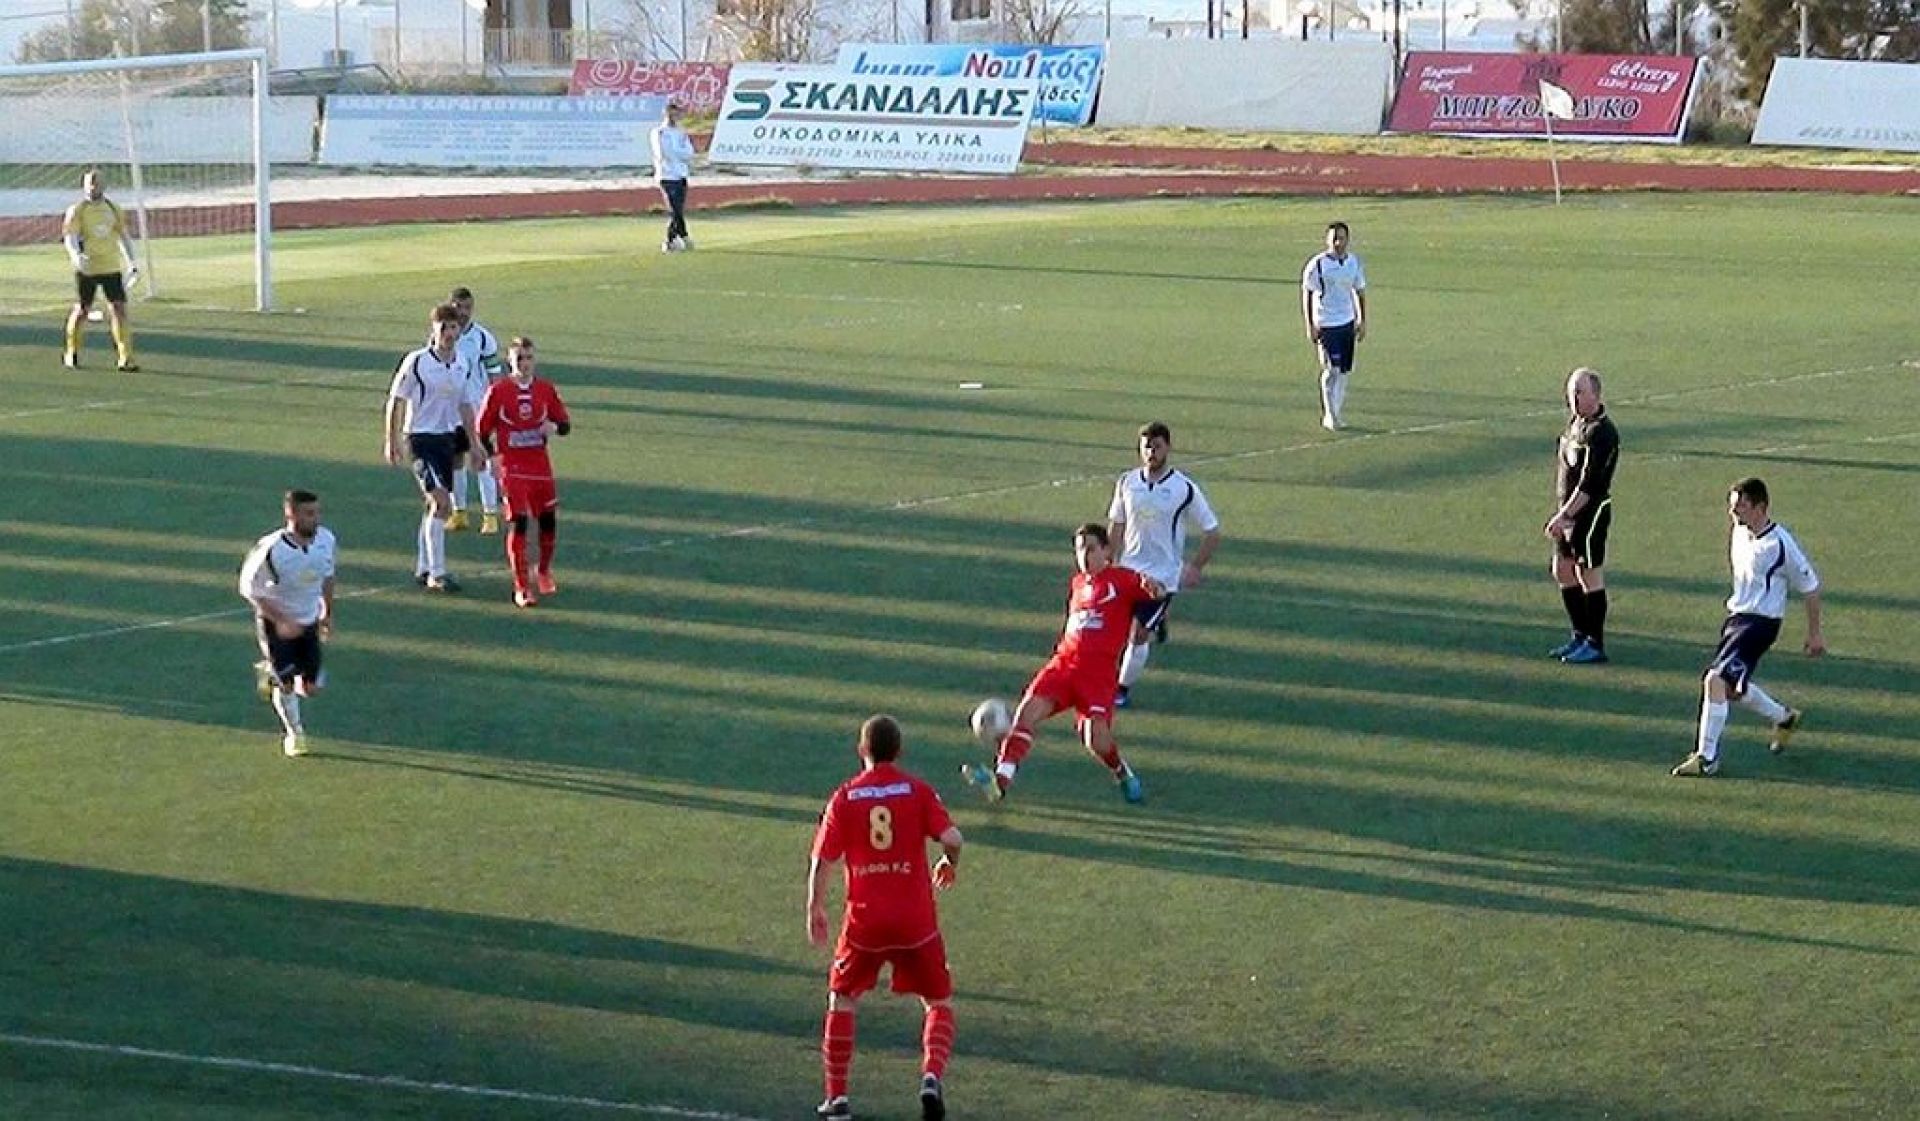 Φωτογραφία από τον τελικο Κυπέλλου στις 1 Μαρτίου του 2015, όπου οι δύο ομάδες συναντήθηκαν για τελευταία φορά